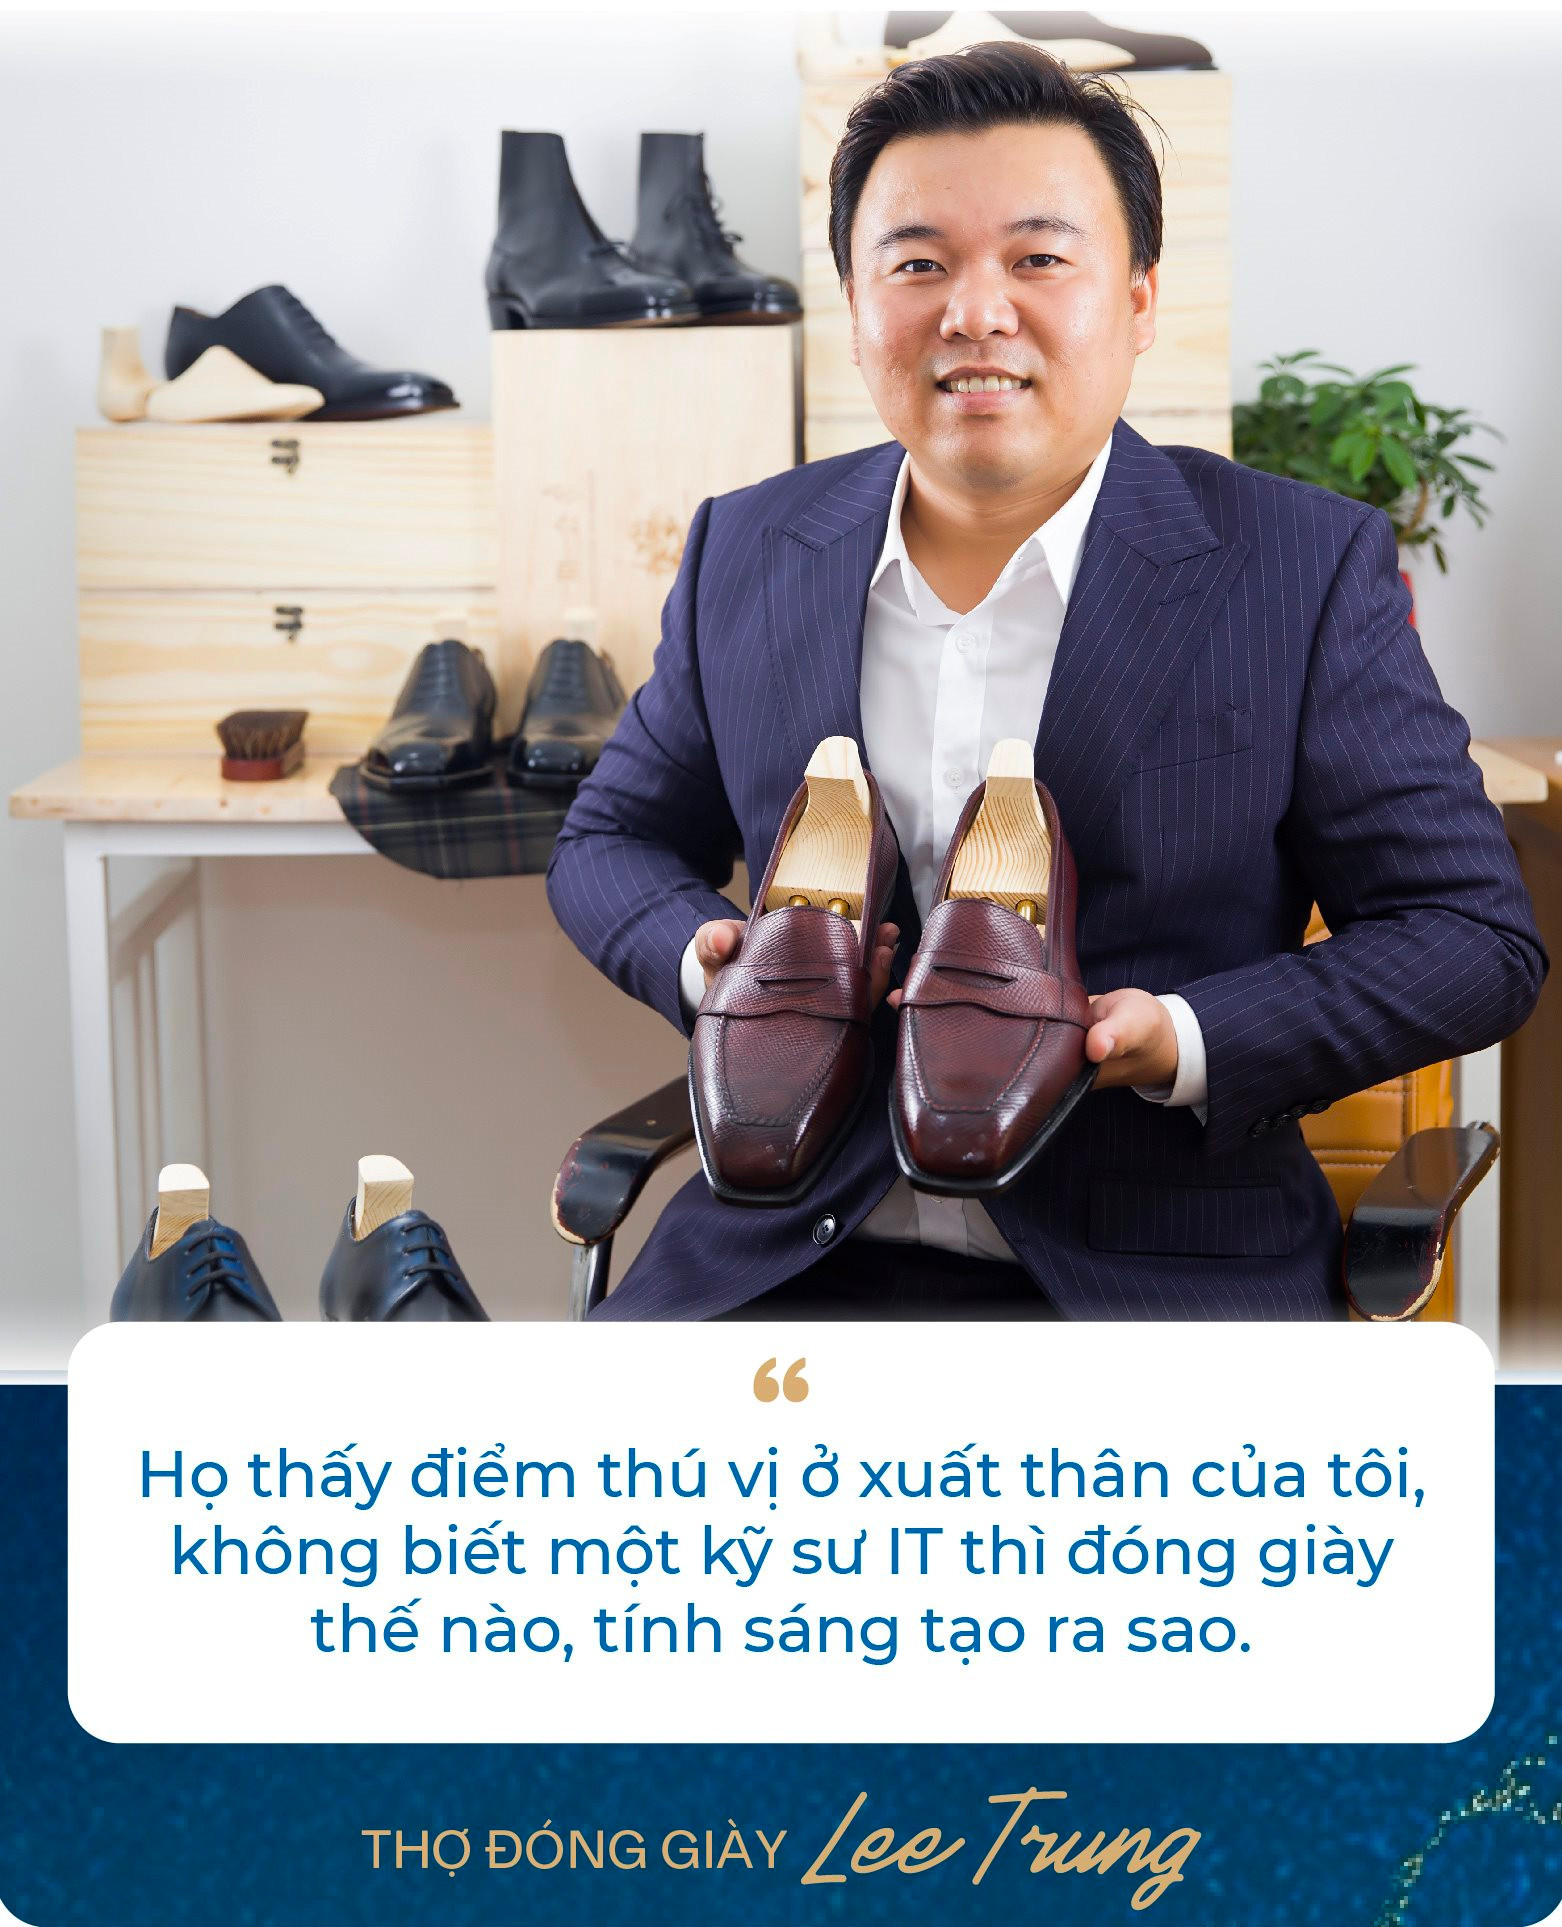 Chàng trai bỏ việc kỹ sư lương nghìn USD để làm thợ đóng giày: Không quảng cáo rầm rộ, giày giá nghìn USD vẫn “đắt hàng”, khẳng định làm vì đam mê - Ảnh 9.